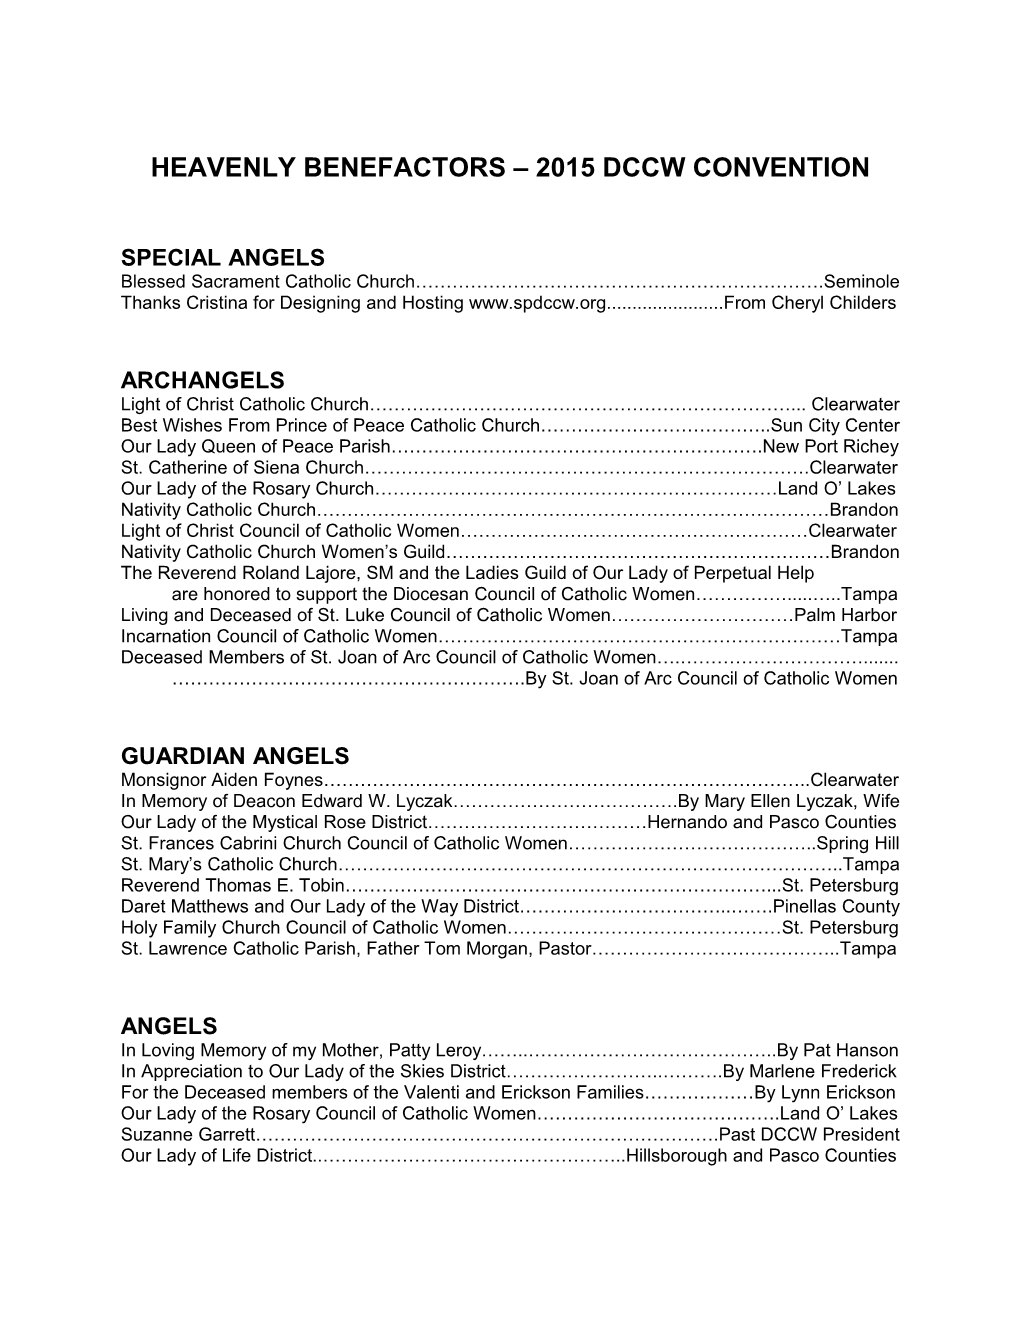 Heavenly Benefactors 2015 Dccw Convention